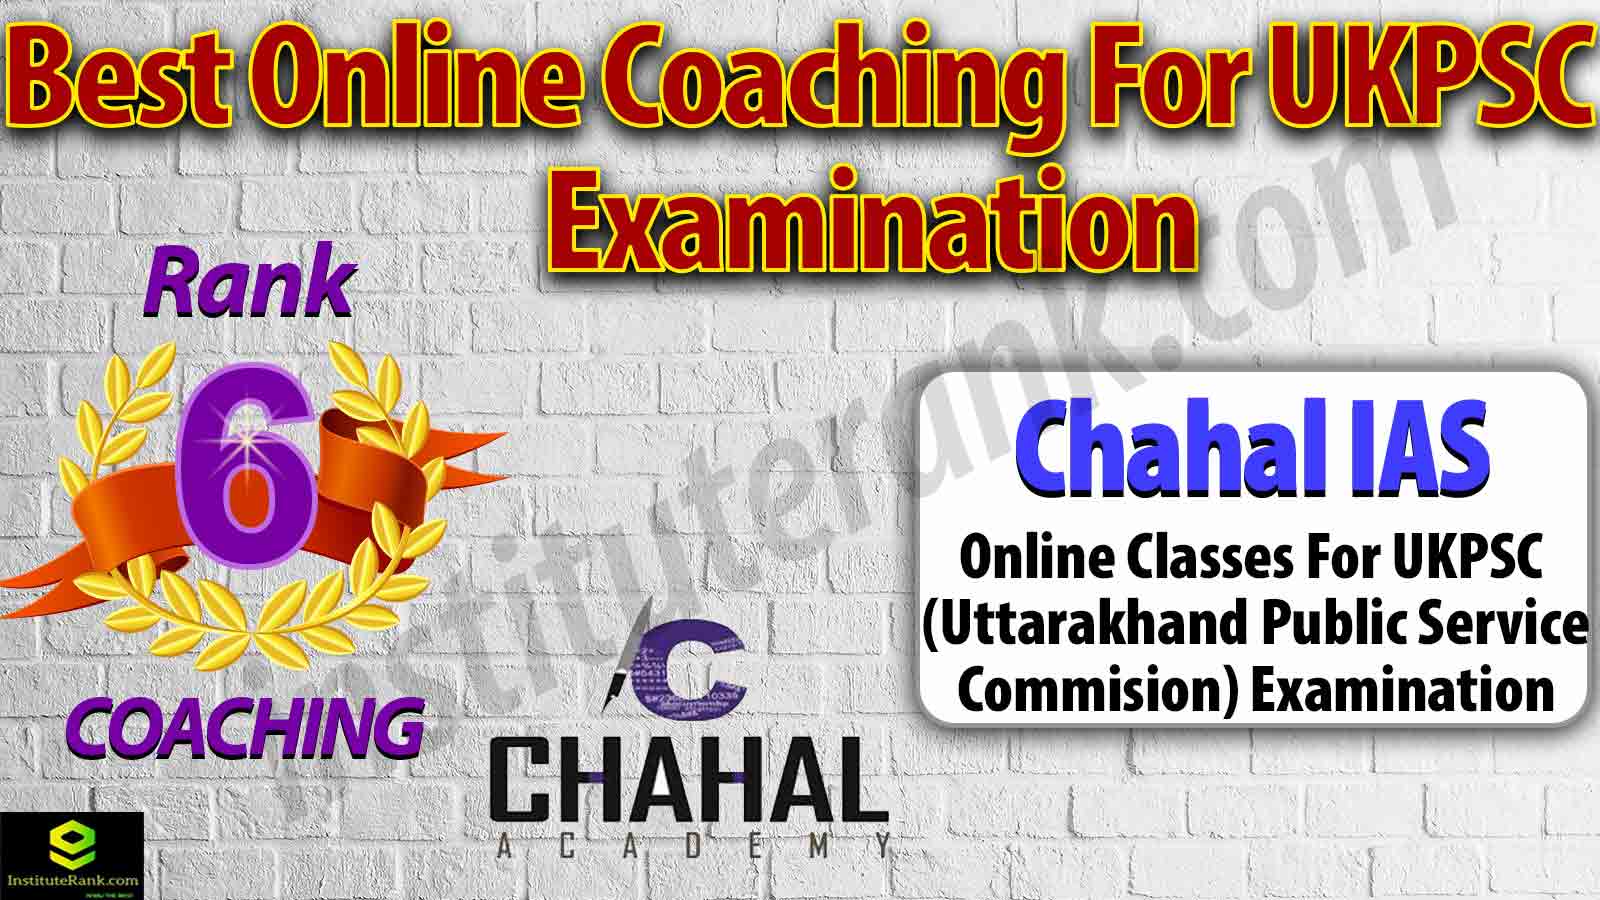 Online Coaching for UKPSC Examination